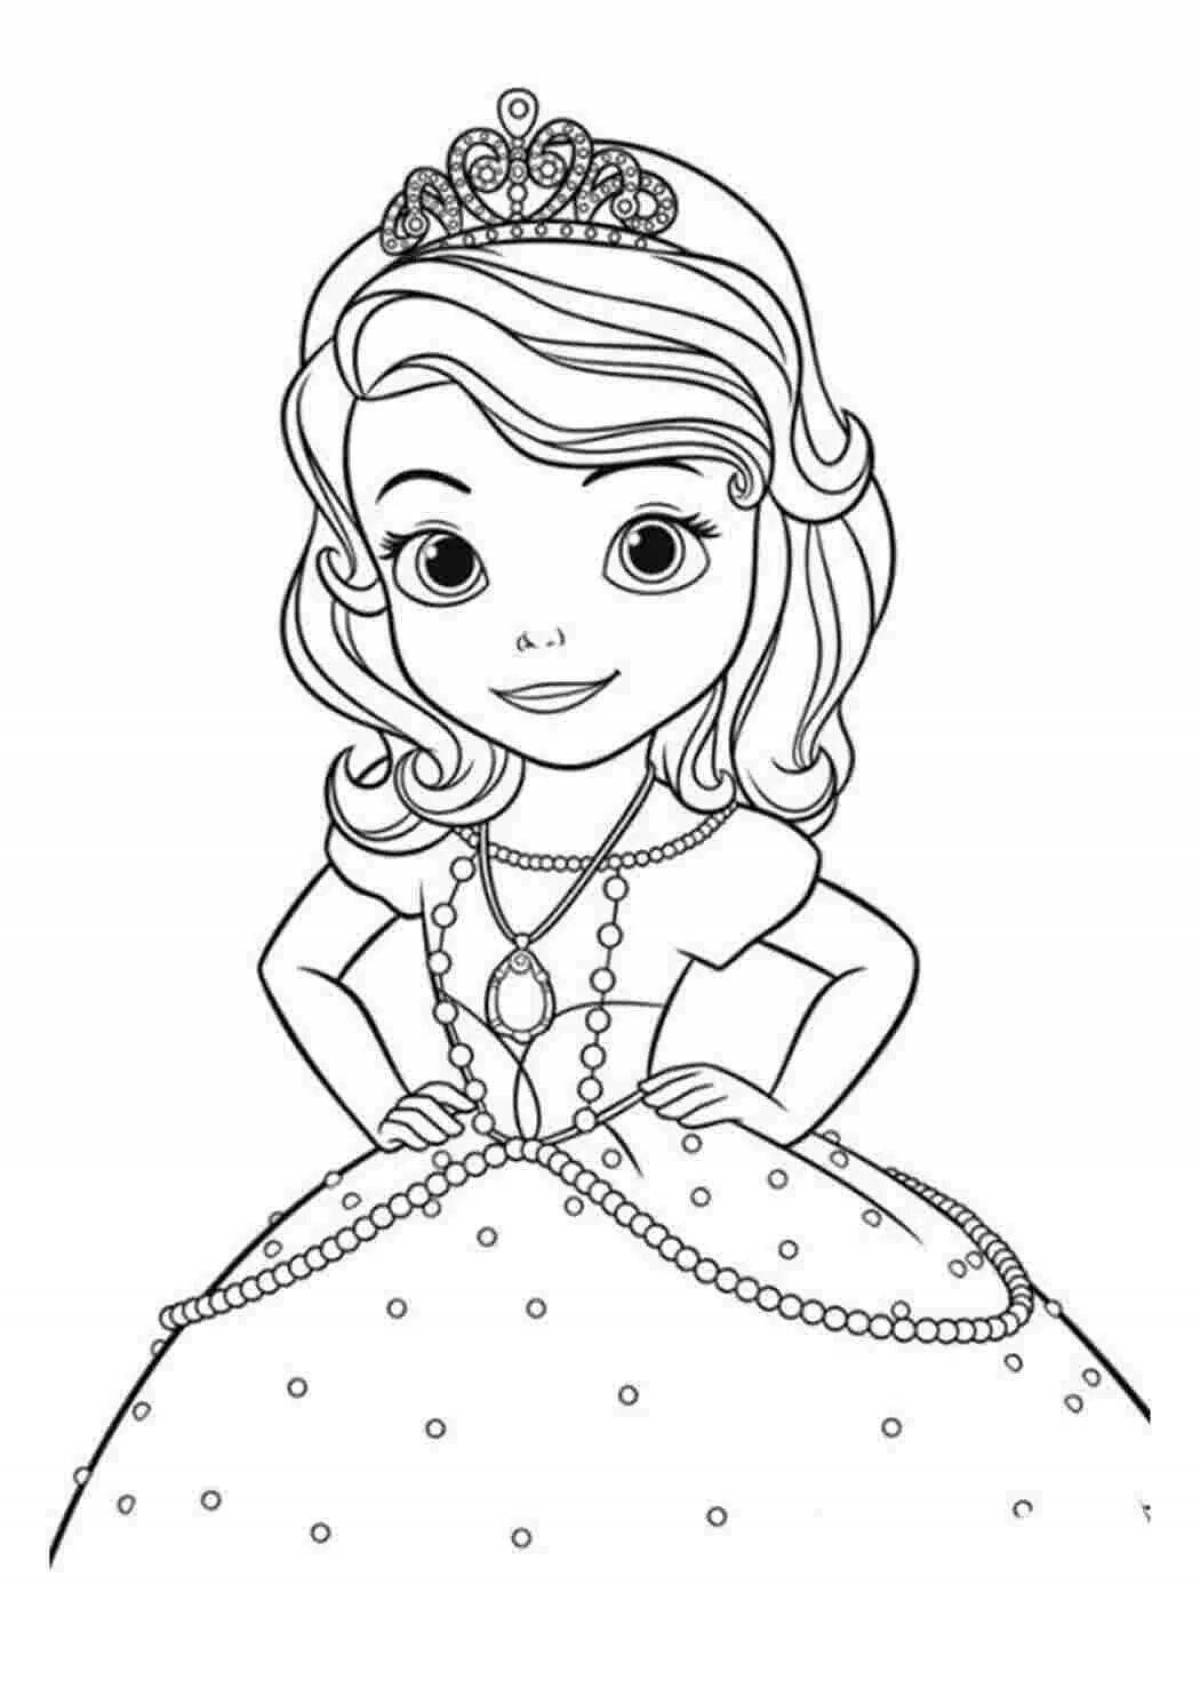 Princess Sofia coloring book for kids